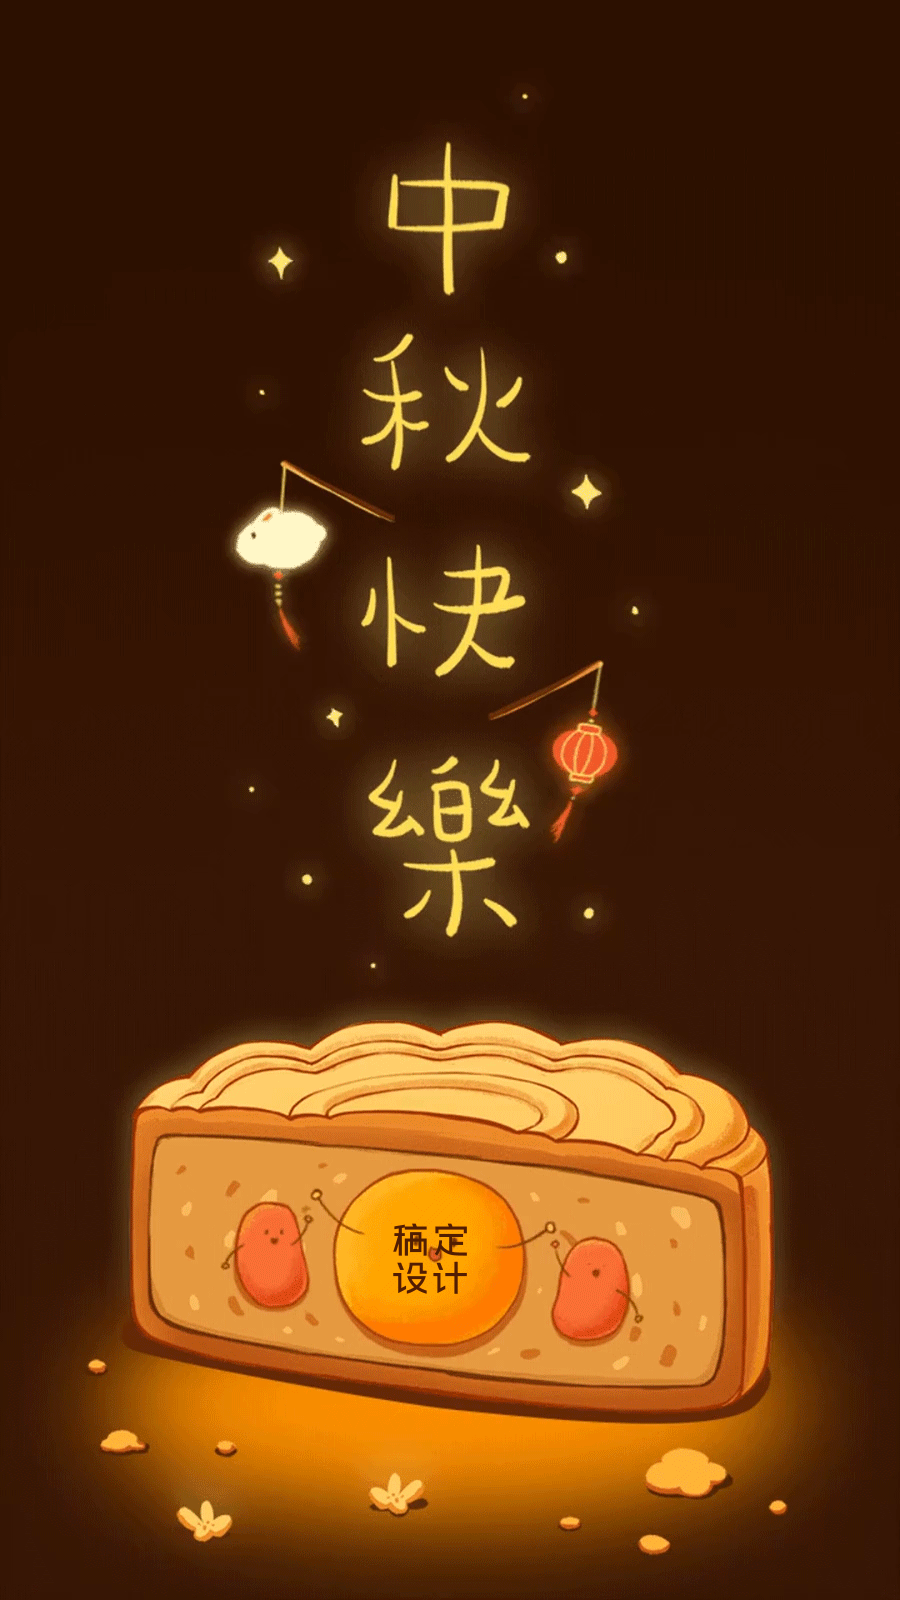 中秋节节日节点祝福插画动态海报